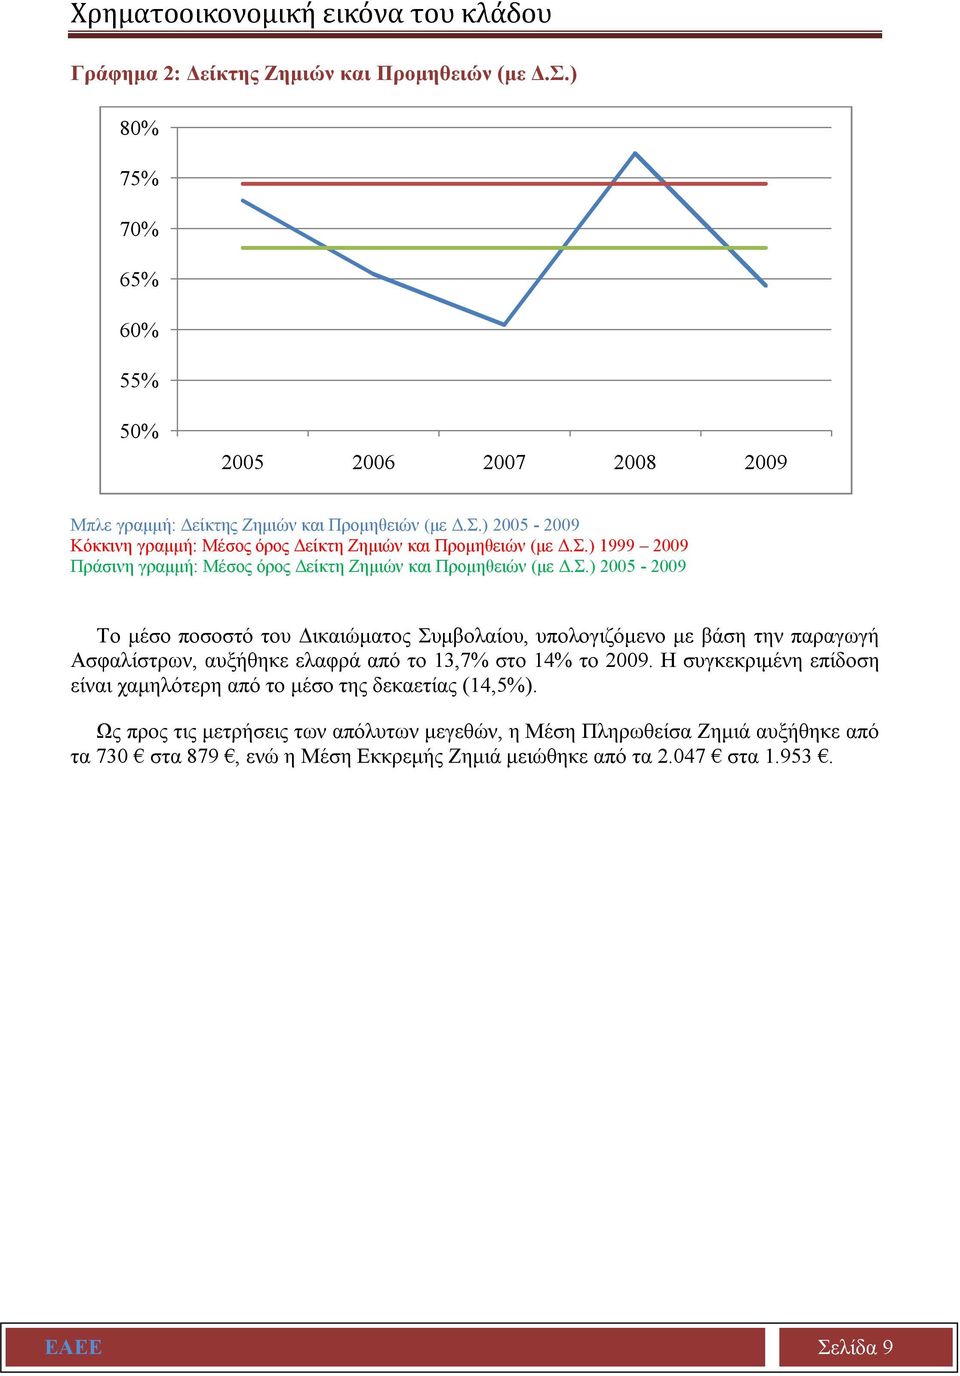 Σ.) 2005-2009 Το μέσο ποσοστό του Δικαιώματος Συμβολαίου, υπολογιζόμενο με βάση την παραγωγή Ασφαλίστρων, αυξήθηκε ελαφρά από το 13,7% στο 14% το 2009.